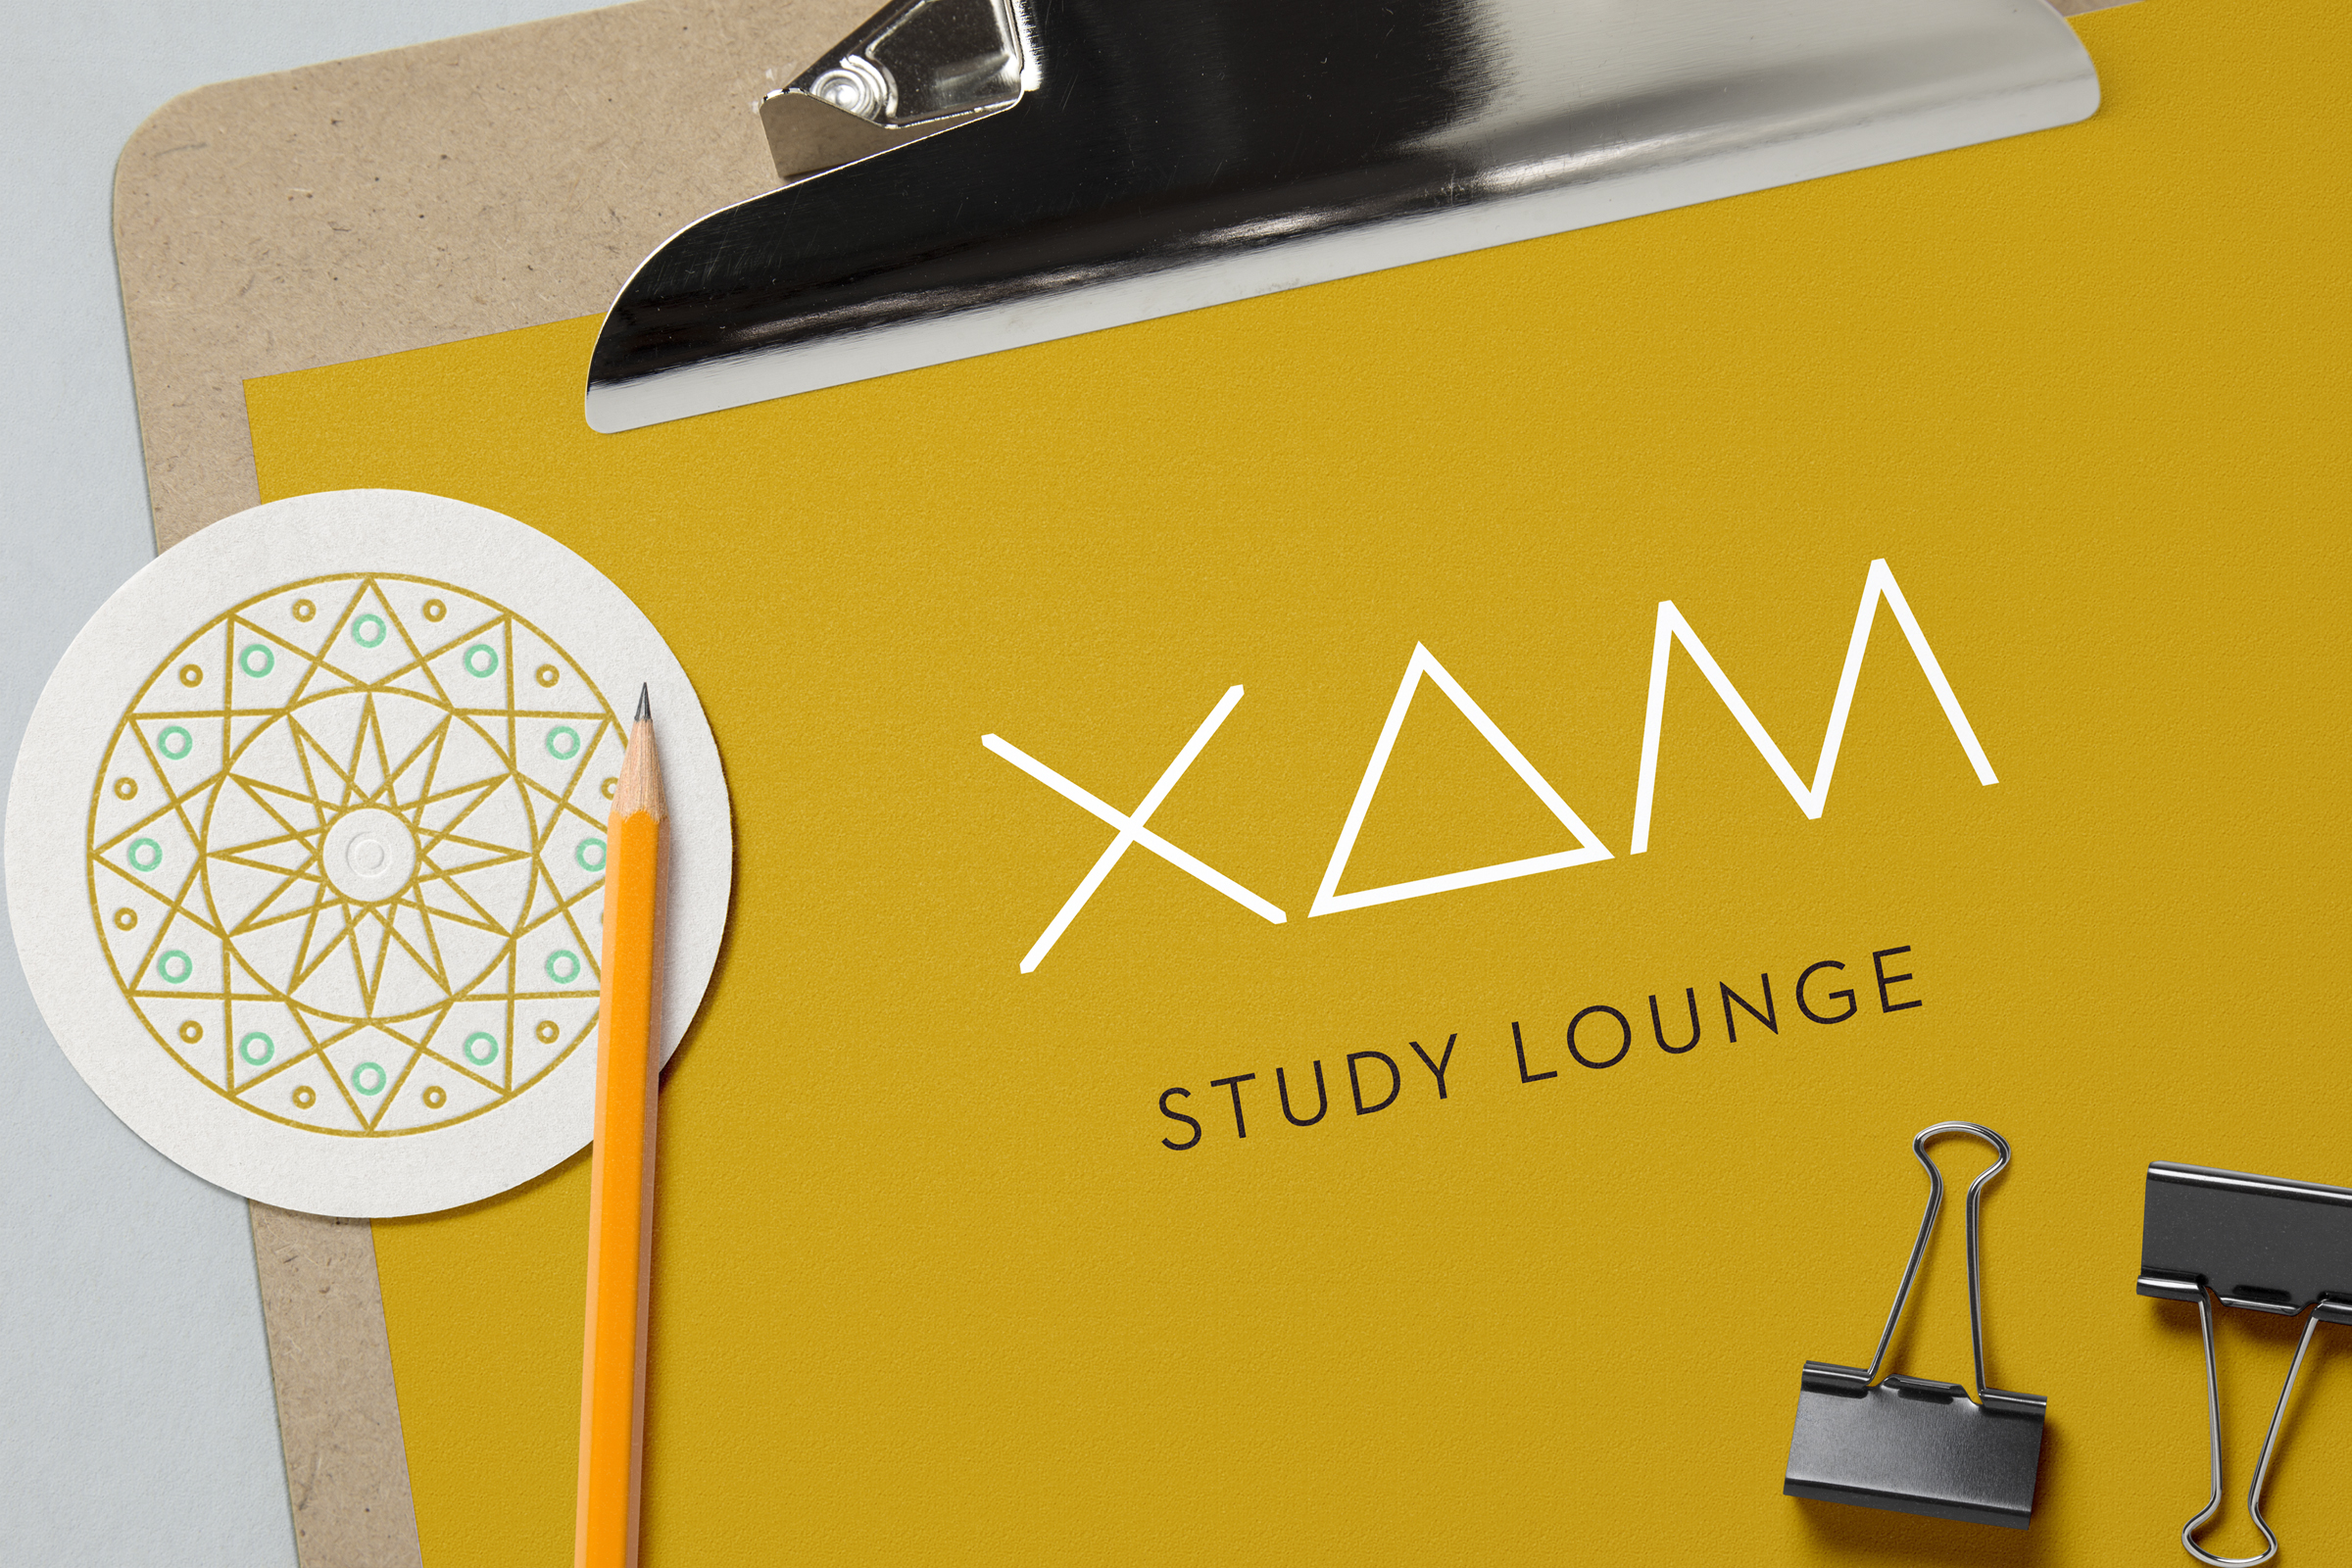 XAM Study Lounge